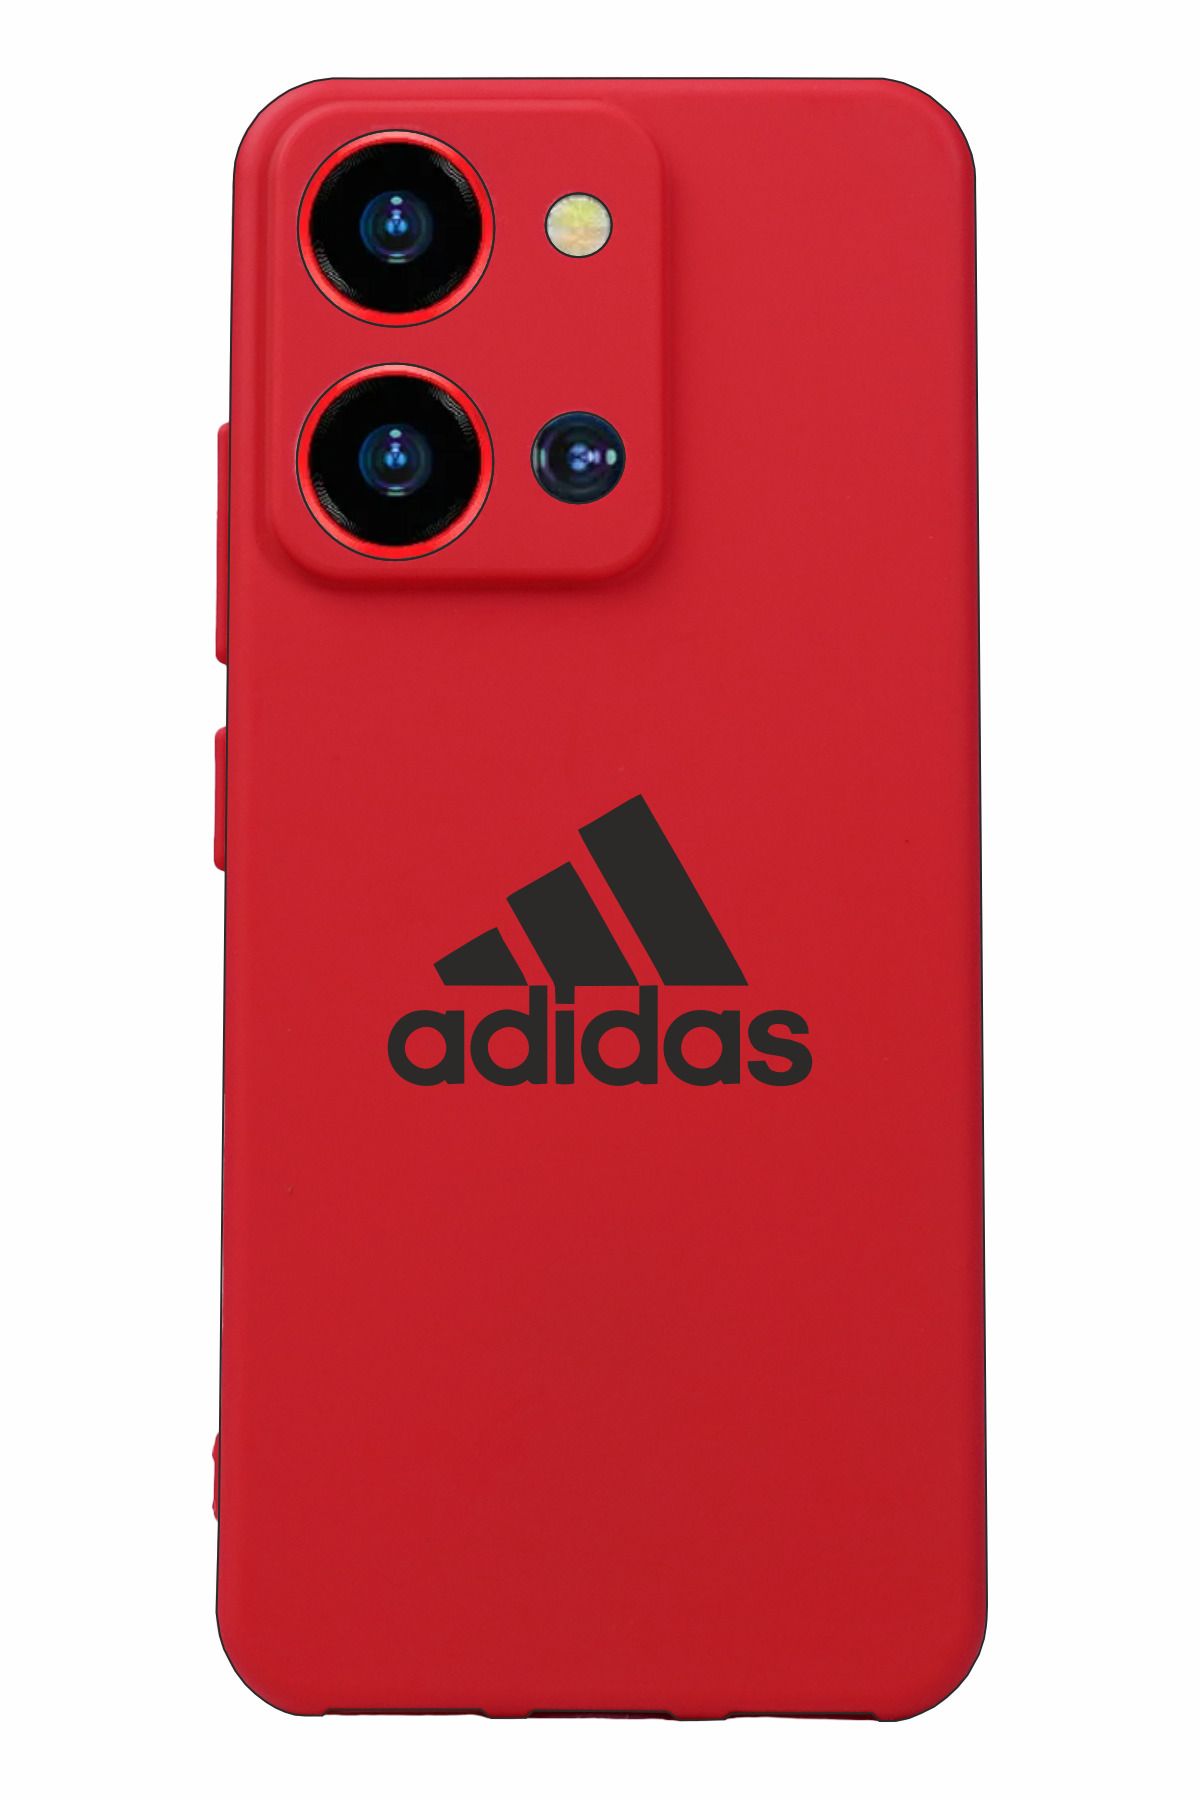 Reeder S19 Max Pro S Zoom Baskılı ve Kamera Korumalı Kırmızı Renk Silikon Kılıf